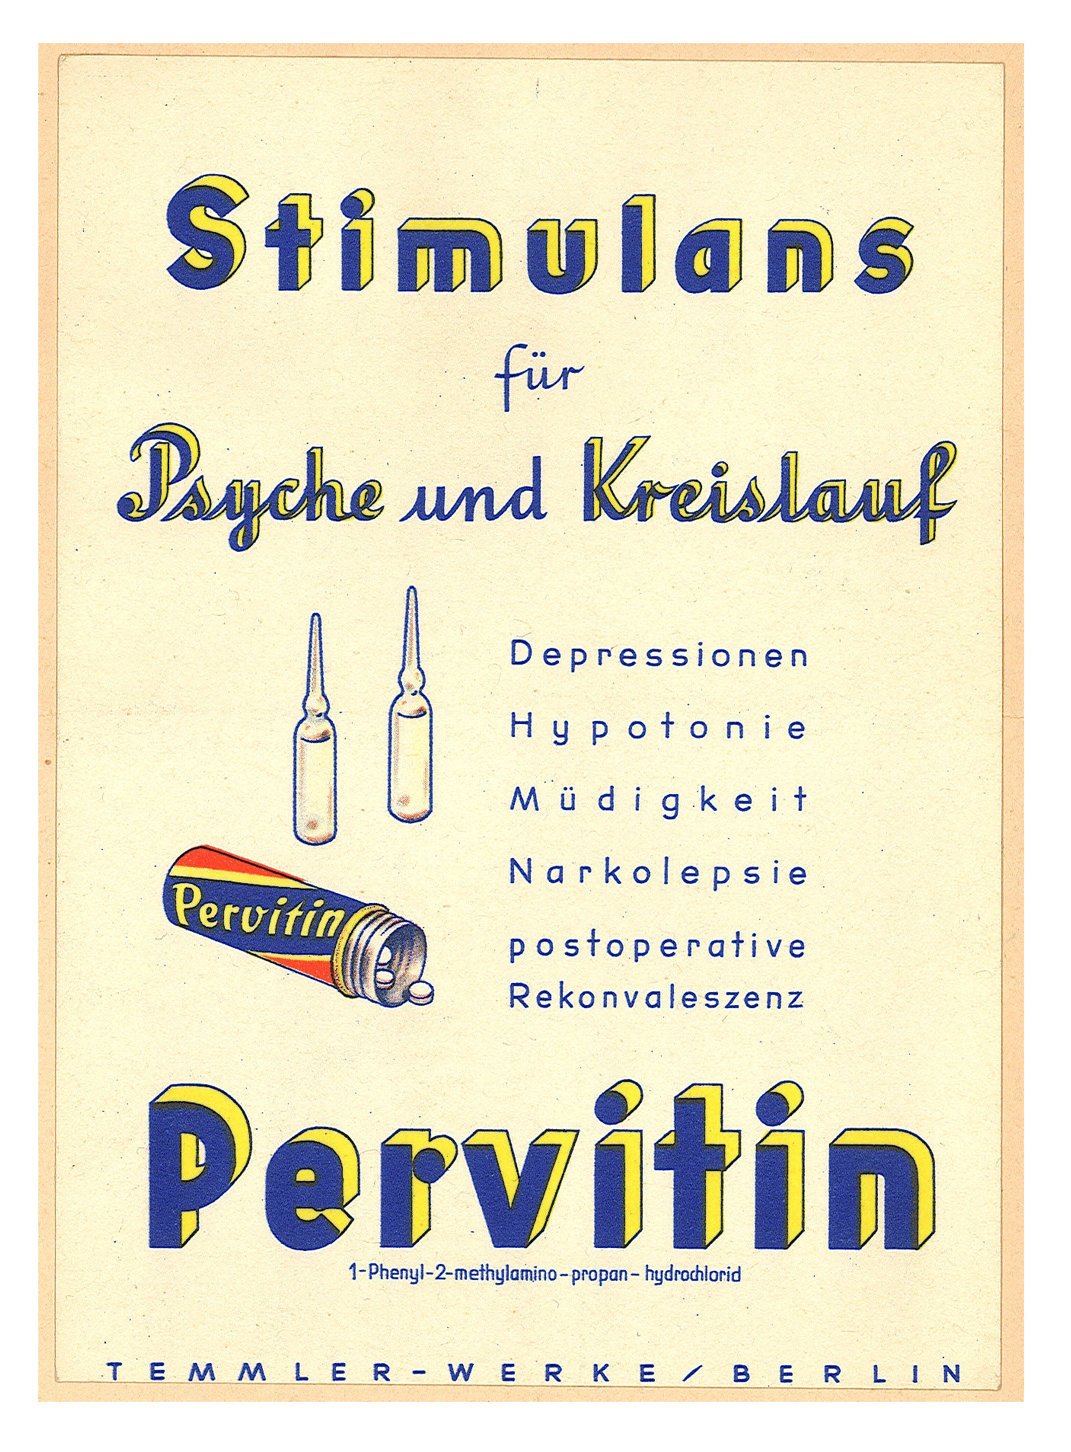 A Harmadik Birodalom kedvenc teljesítményfokozó harci drogja, a Pervitin színtiszta metamfetamin volt.